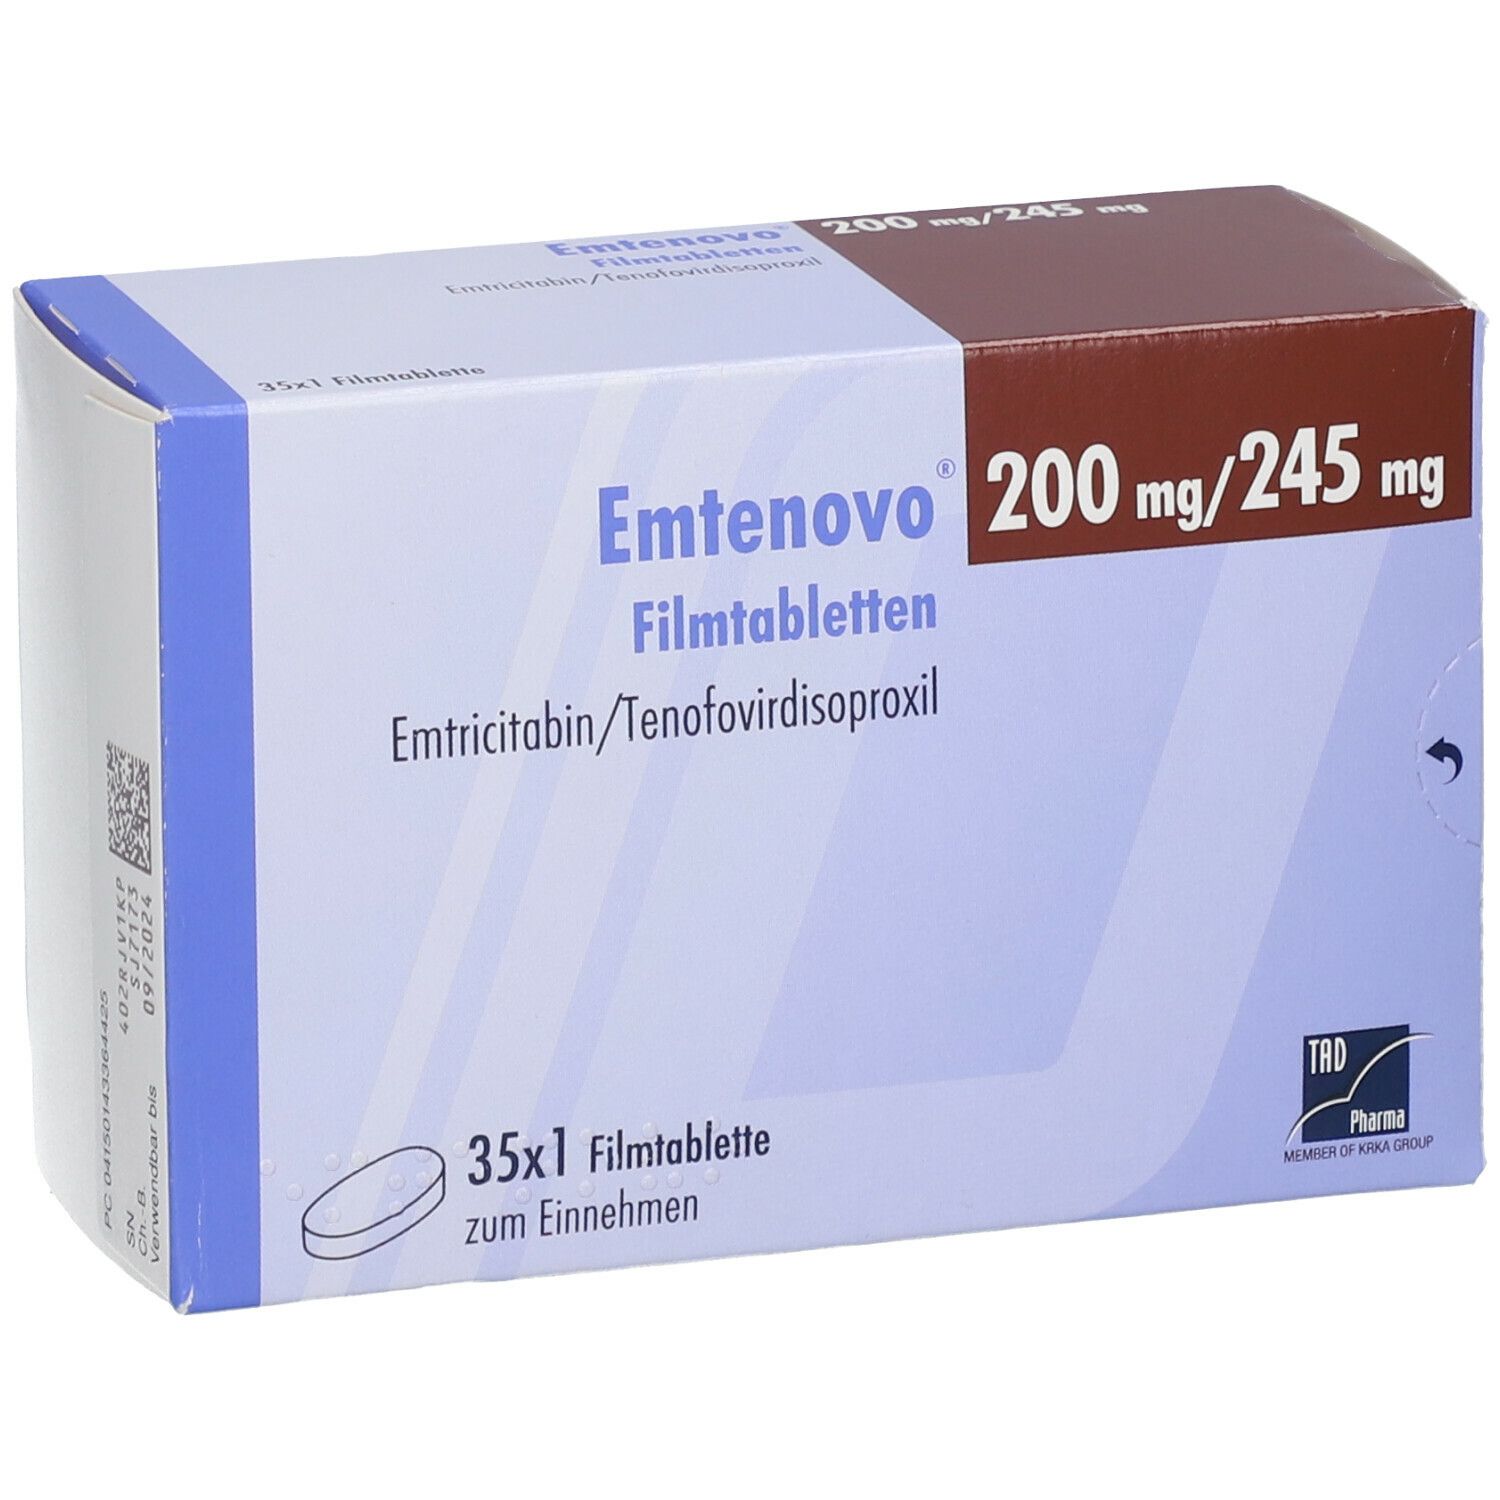 Emtenovo® 200 mg/245 mg